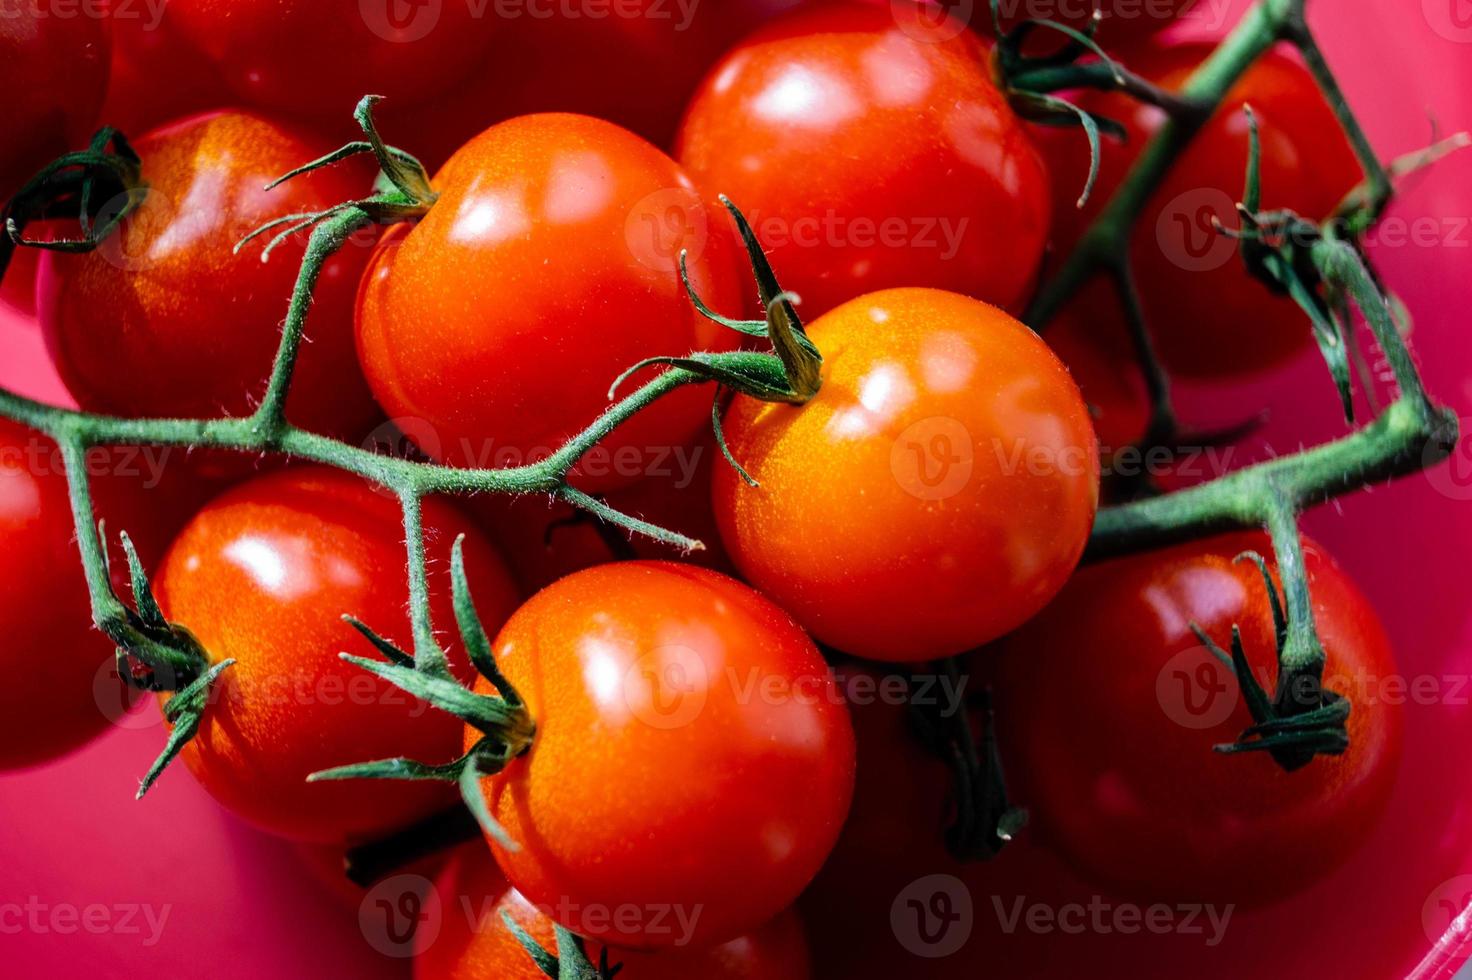 pomodori tondi rossi solanum lycopersicum foto